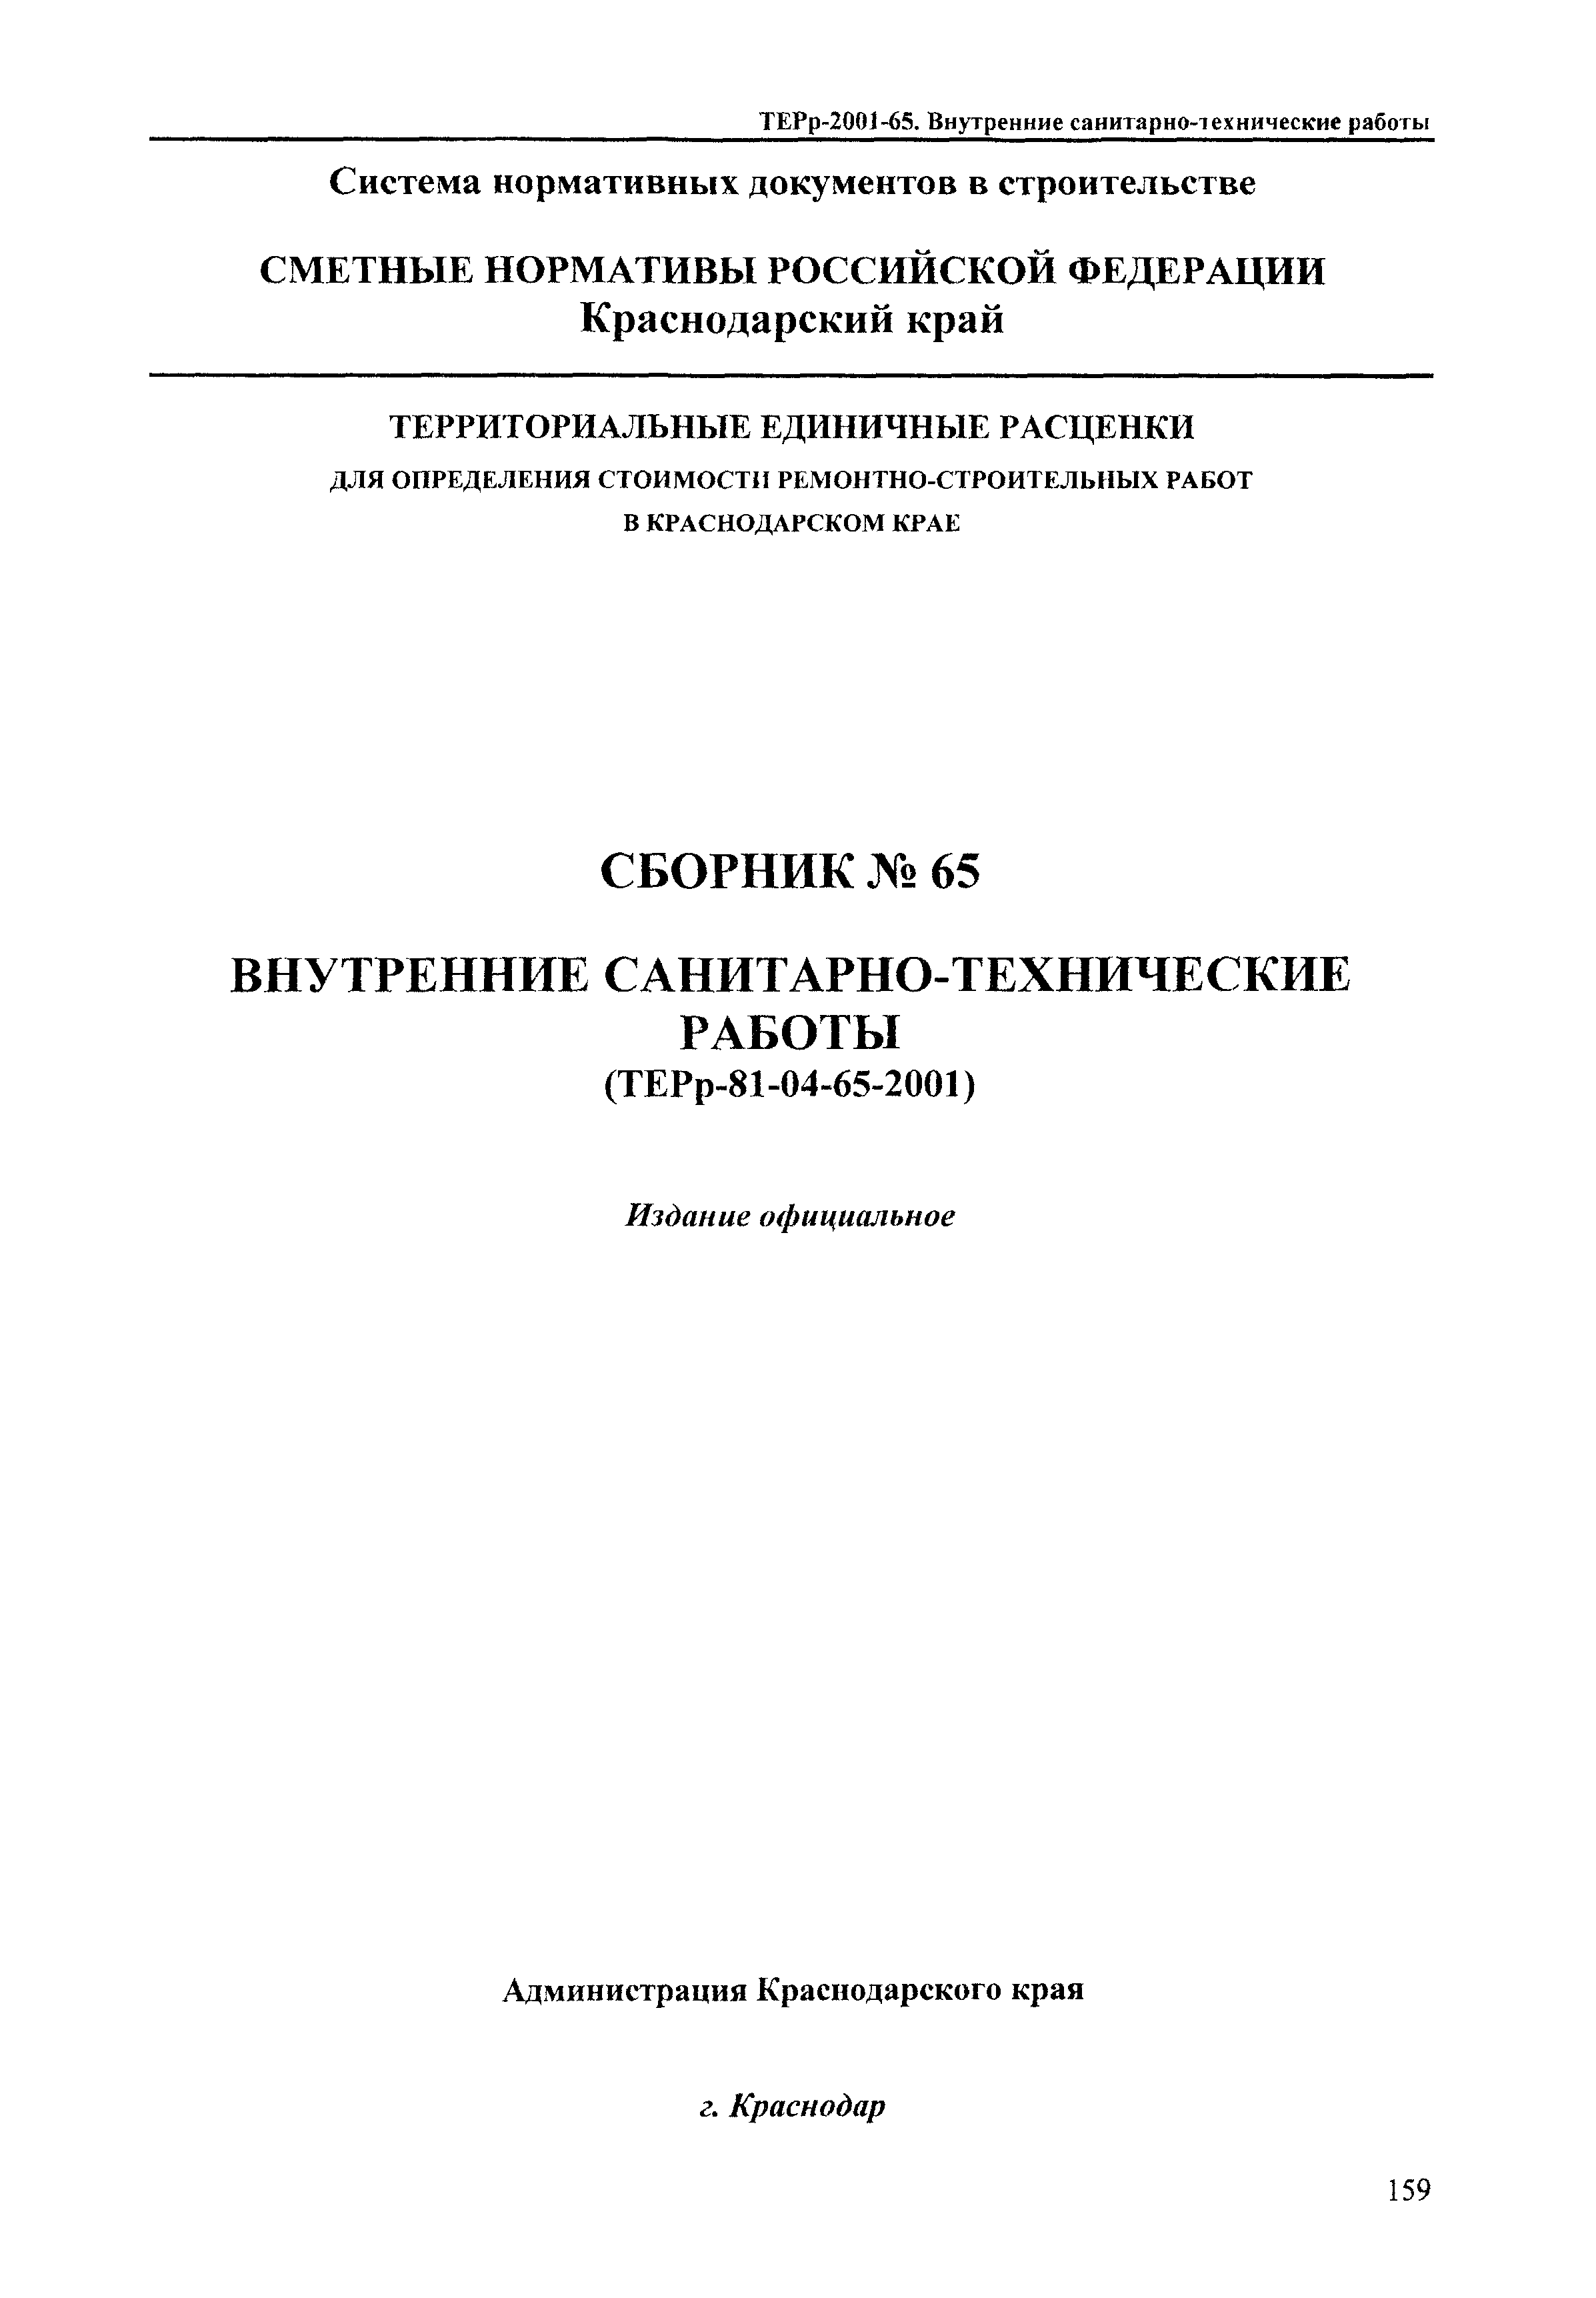 ТЕРр Краснодарского края 2001-65